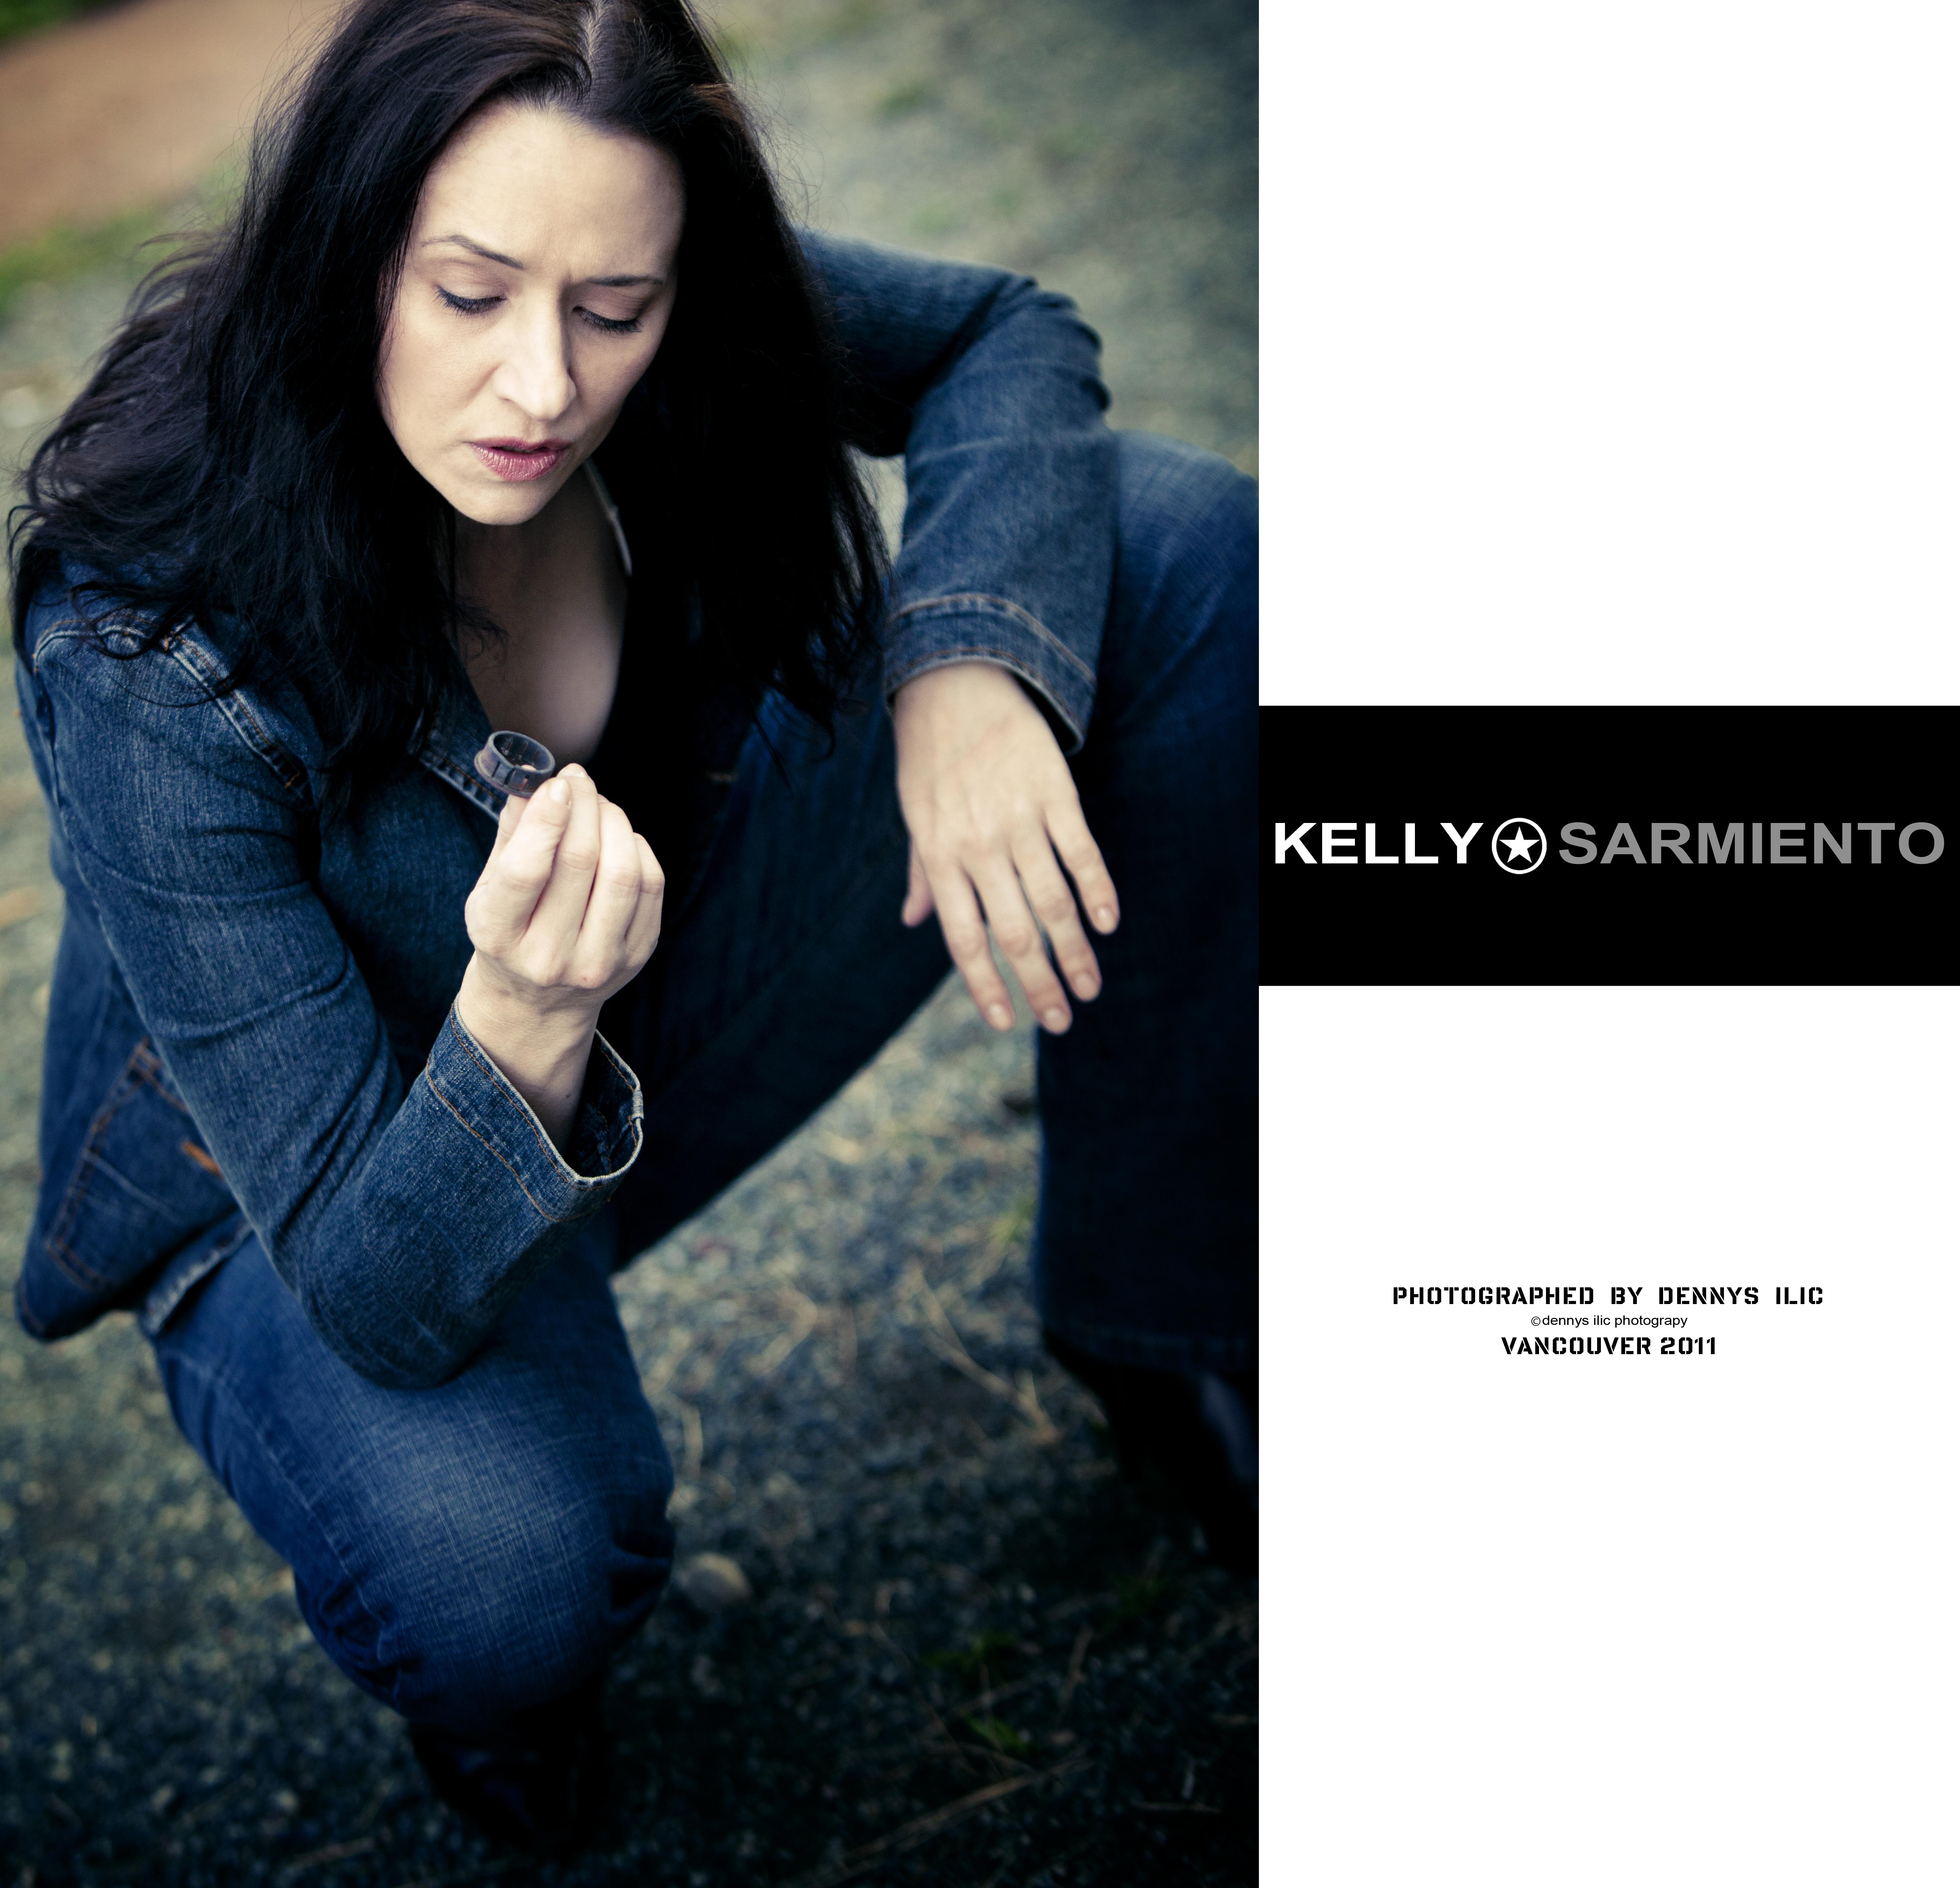 Kelly Sarmiento